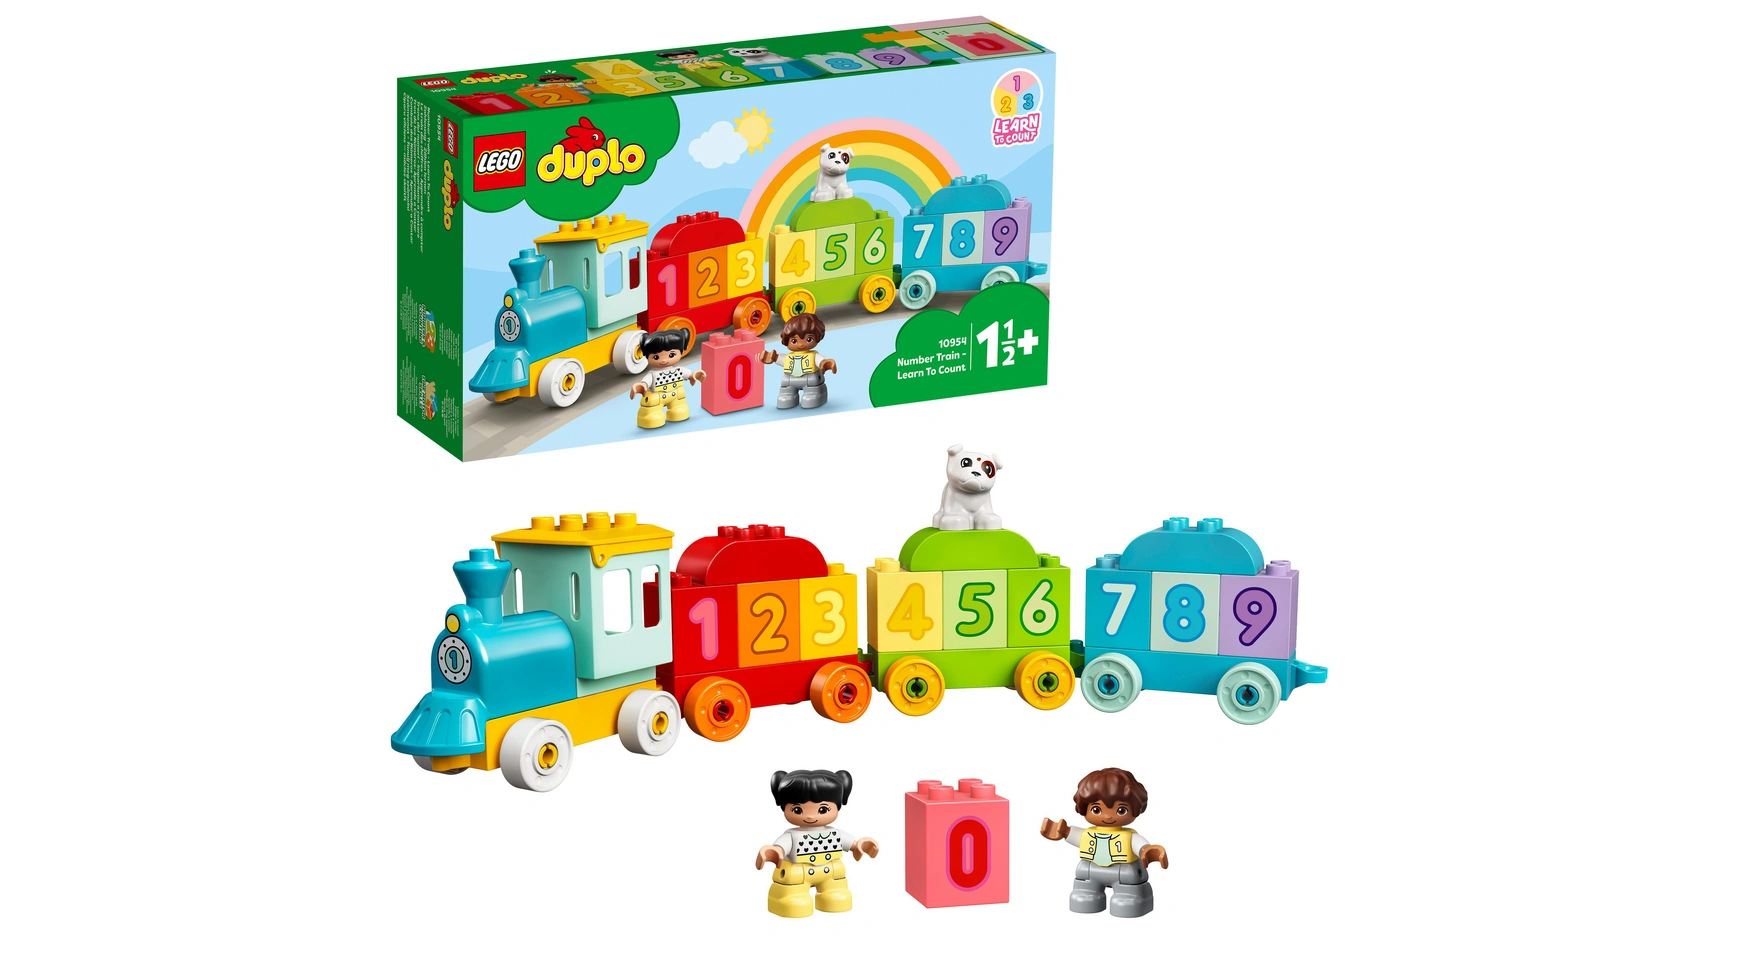 Lego DUPLO Цифровой поезд Учимся считать, детская игрушка, поезд